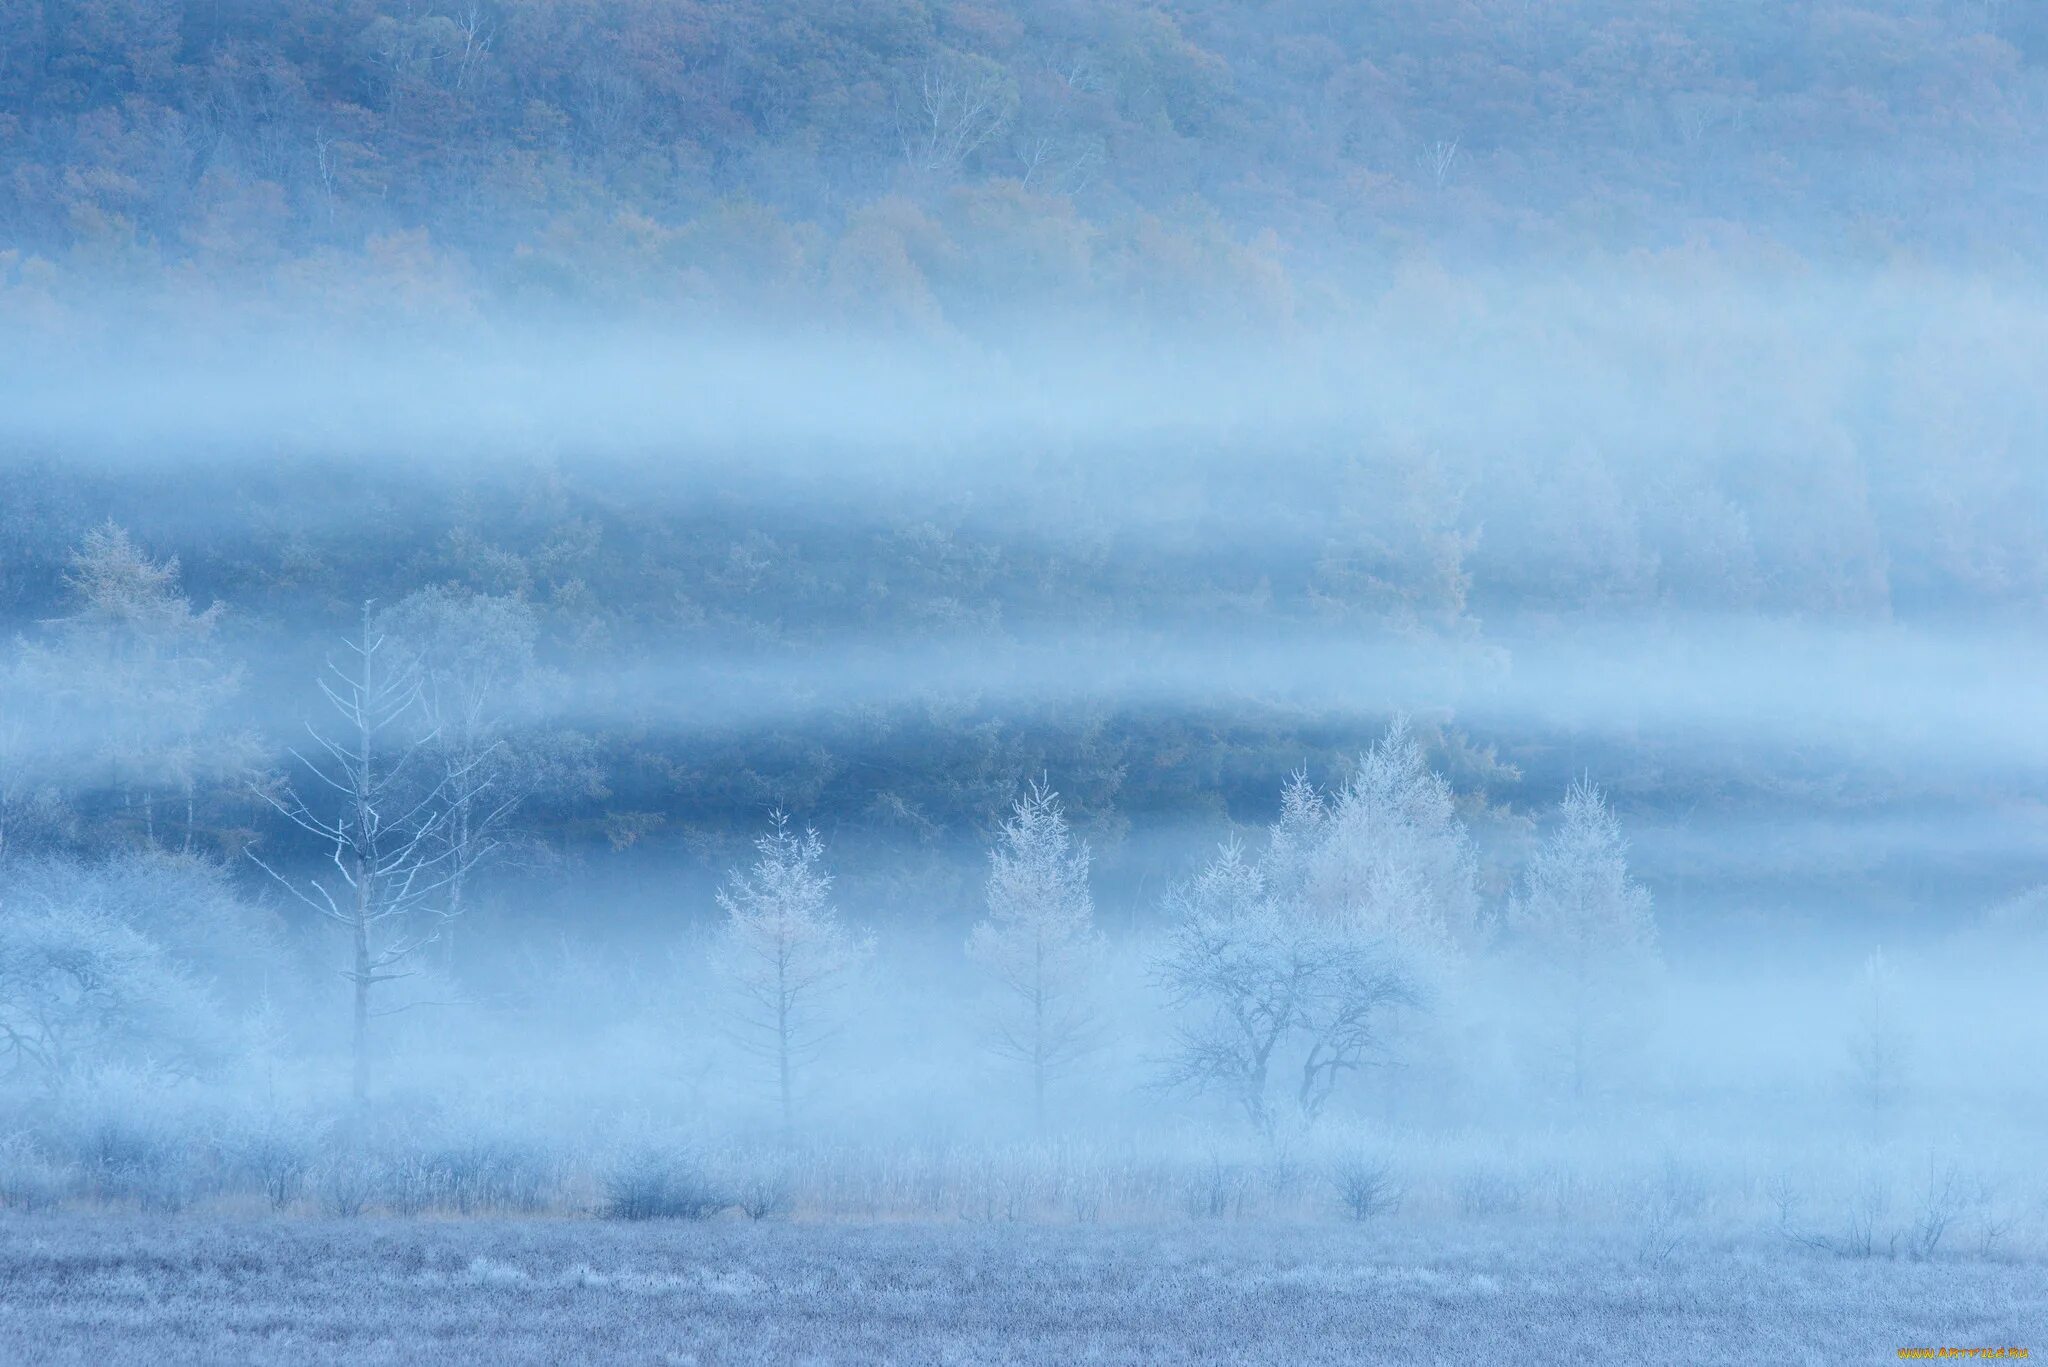 Снежная дымка. Заснеженное поле. Голубая дымка. Зимние деревья в тумане. Дымка снега